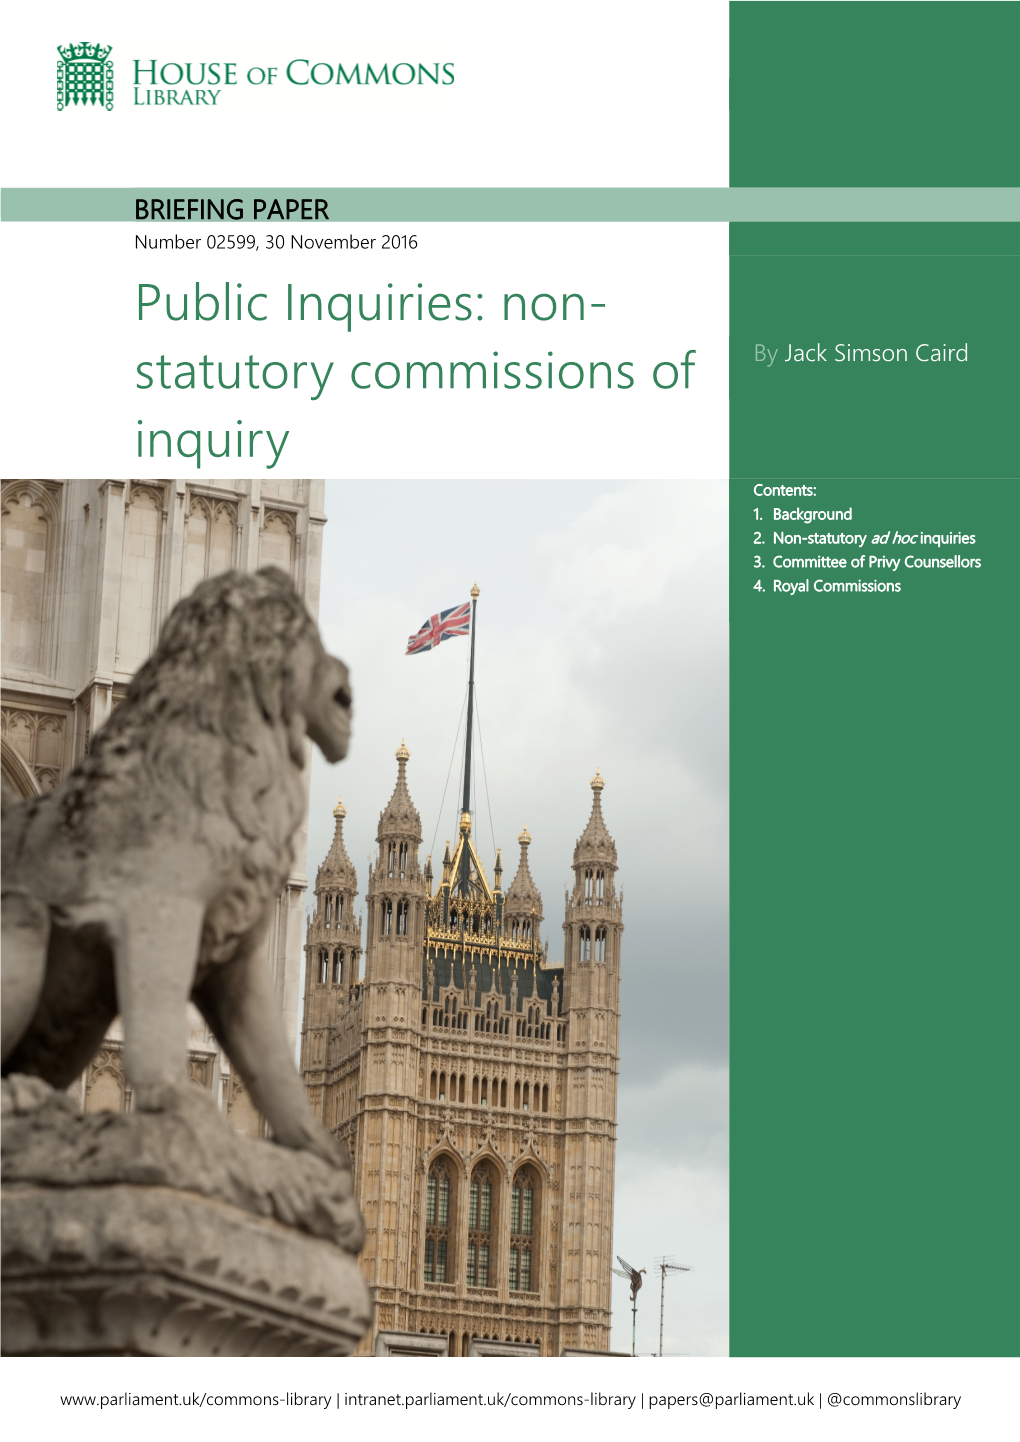 Public Inquiries: Non-Statutory Commissions of Inquiry